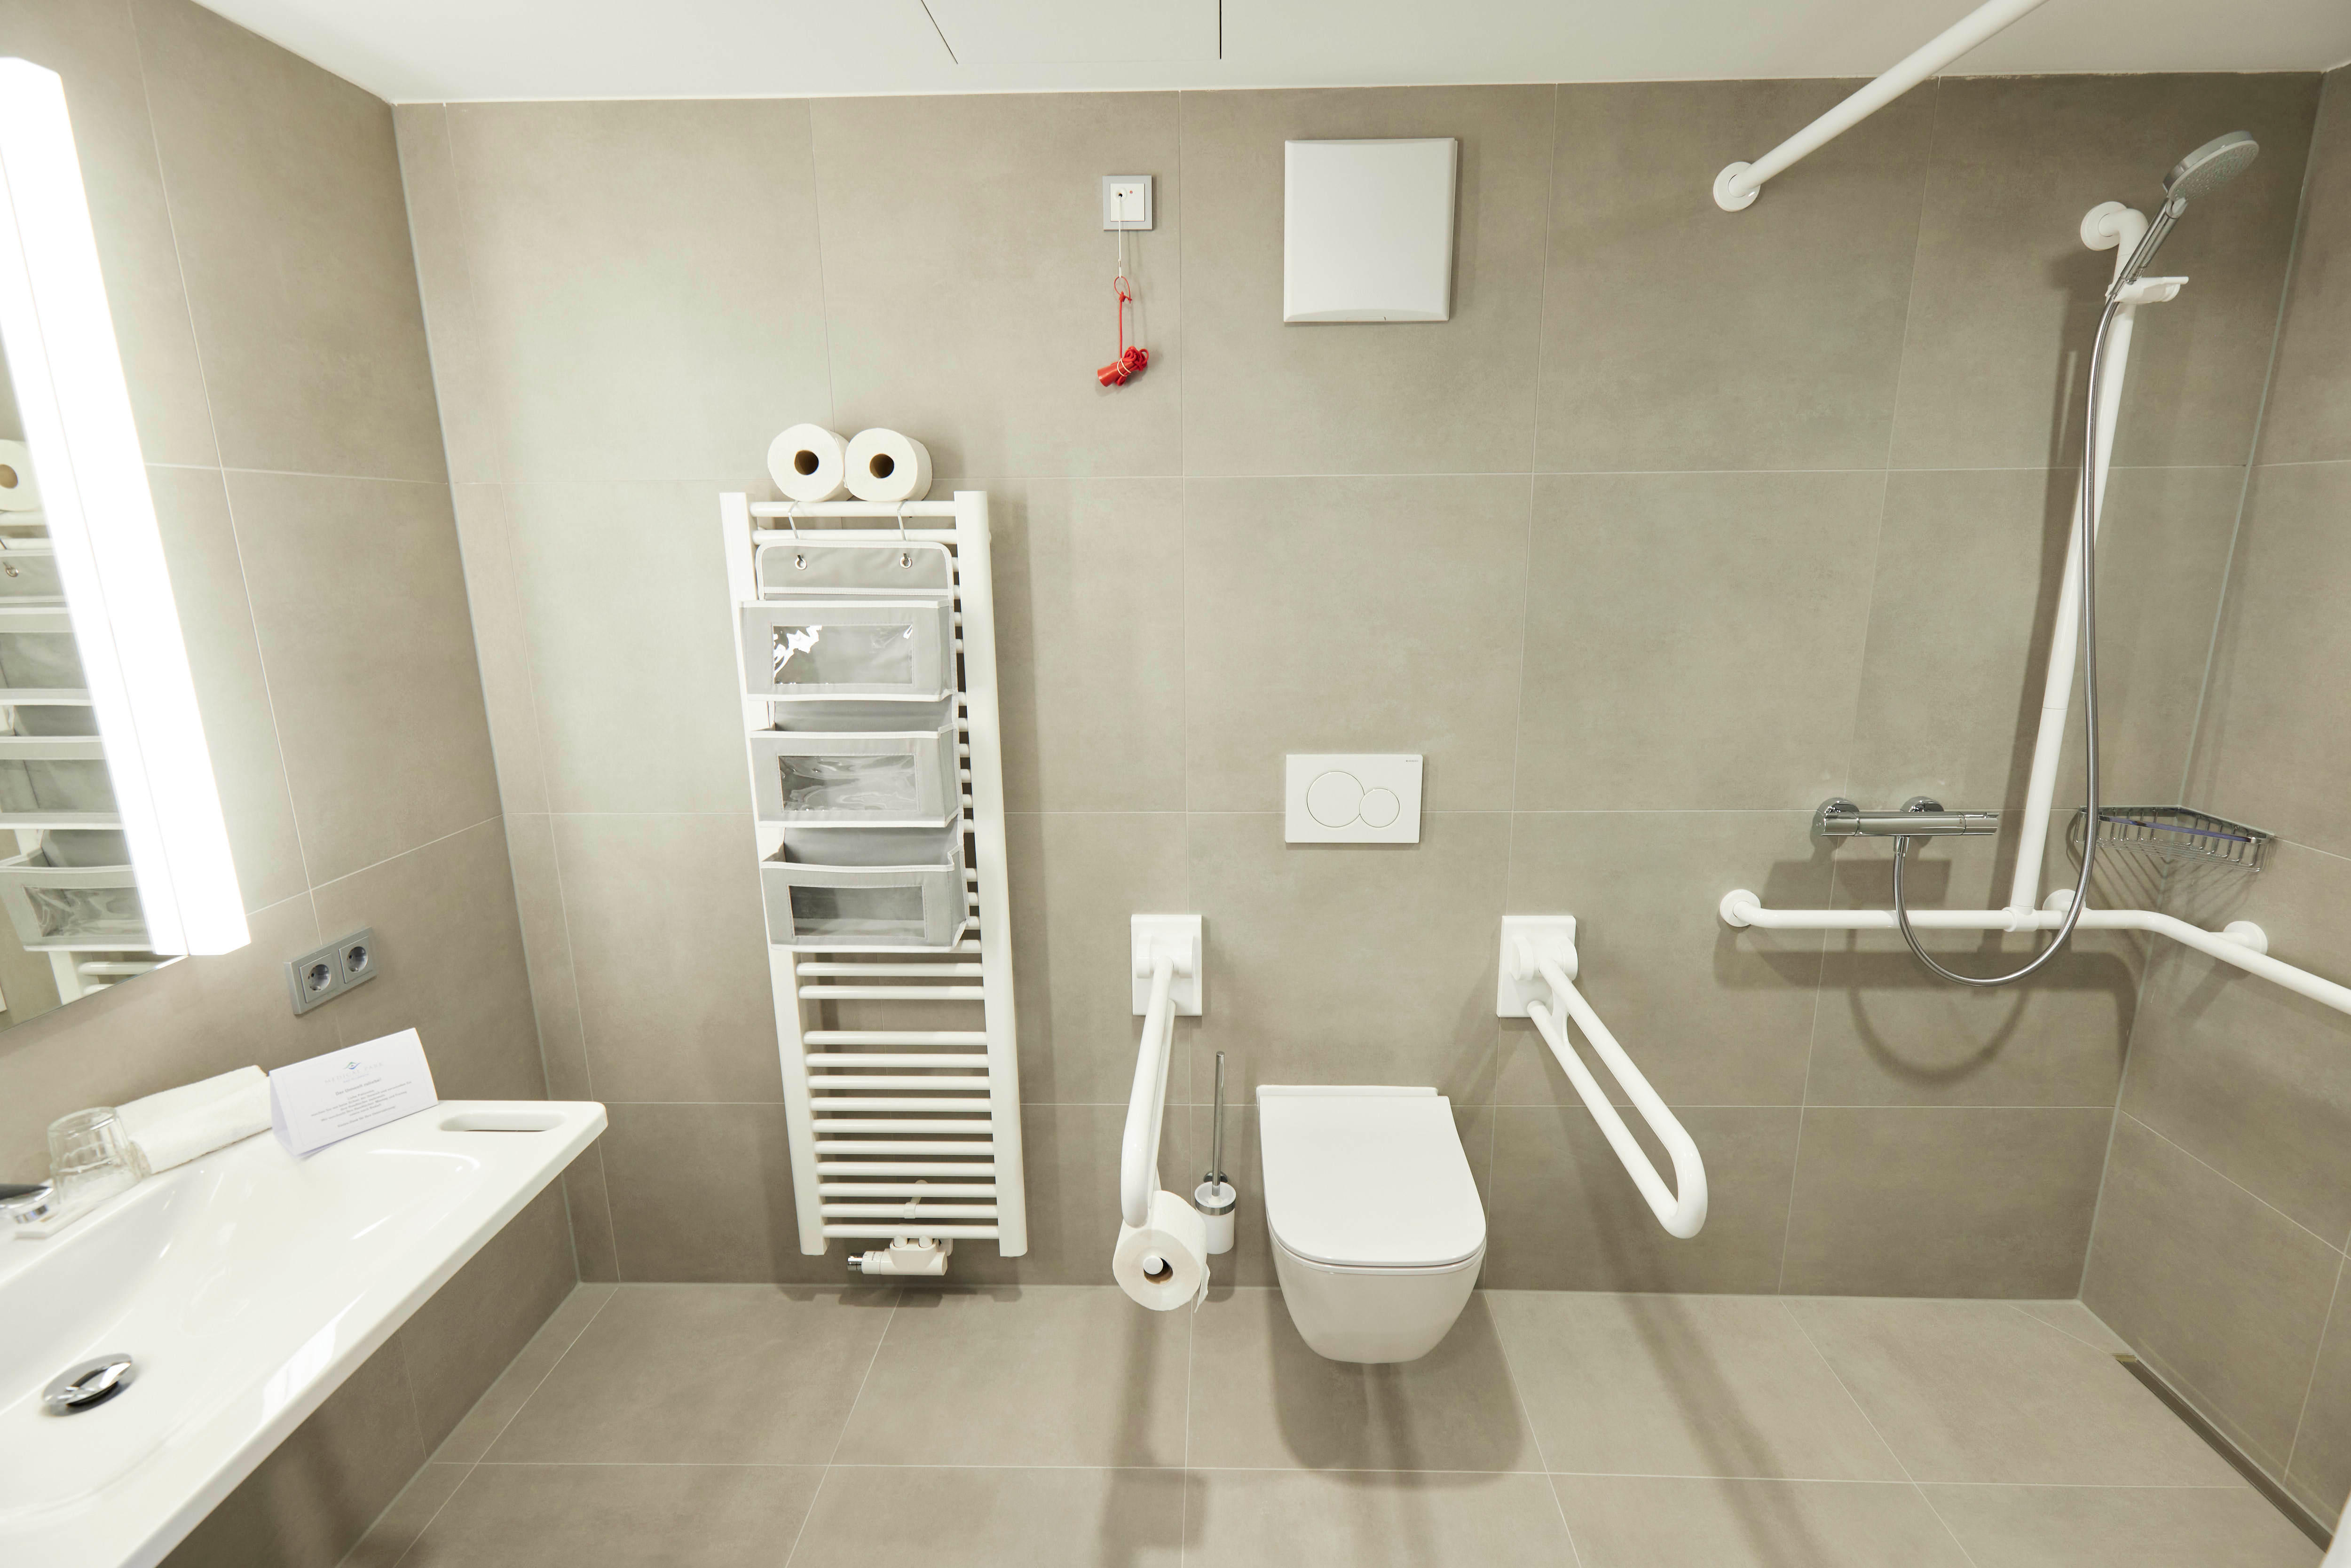 Gleichermaßen komfortabel und funktional ausgestattete Badezimmer